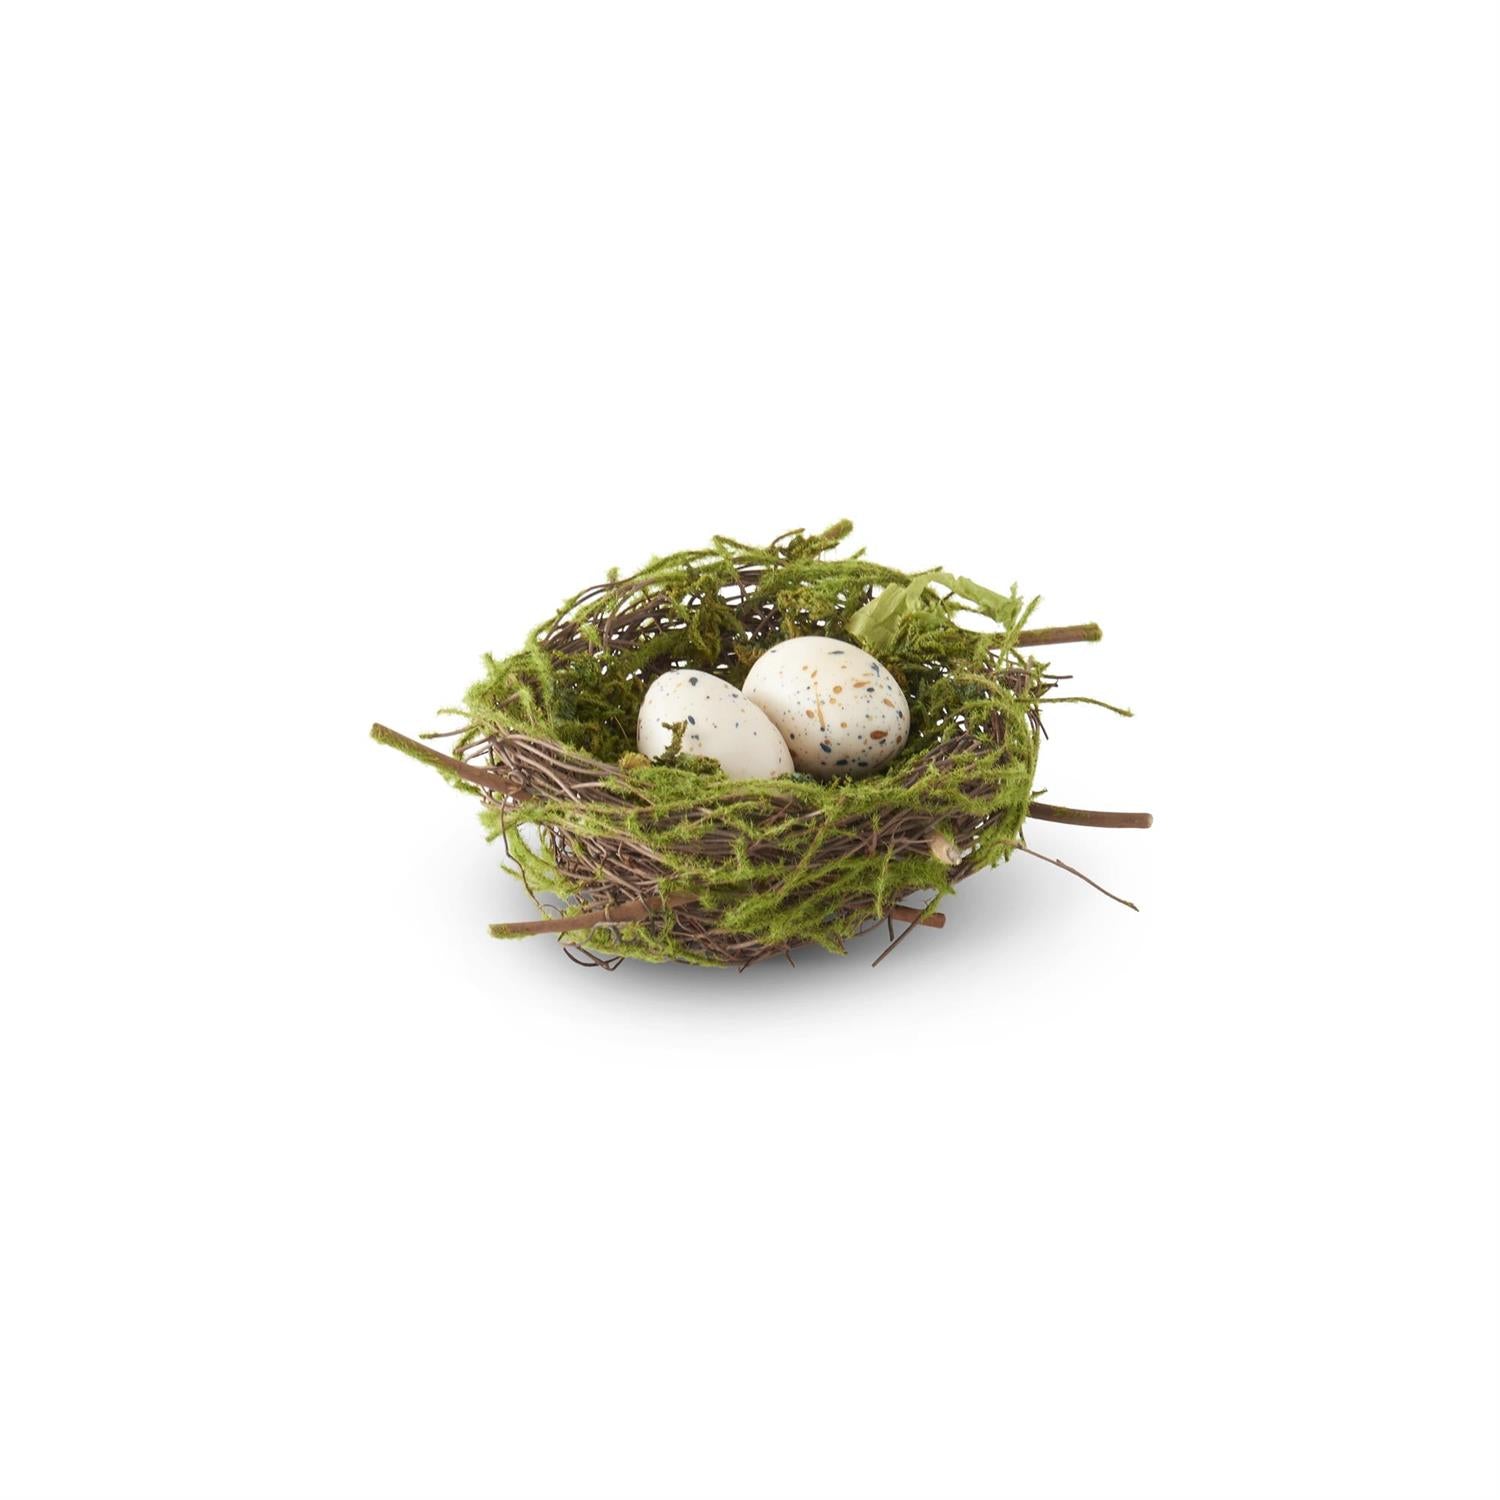 K&K 5.5" Twig Bird Nest with Eggs